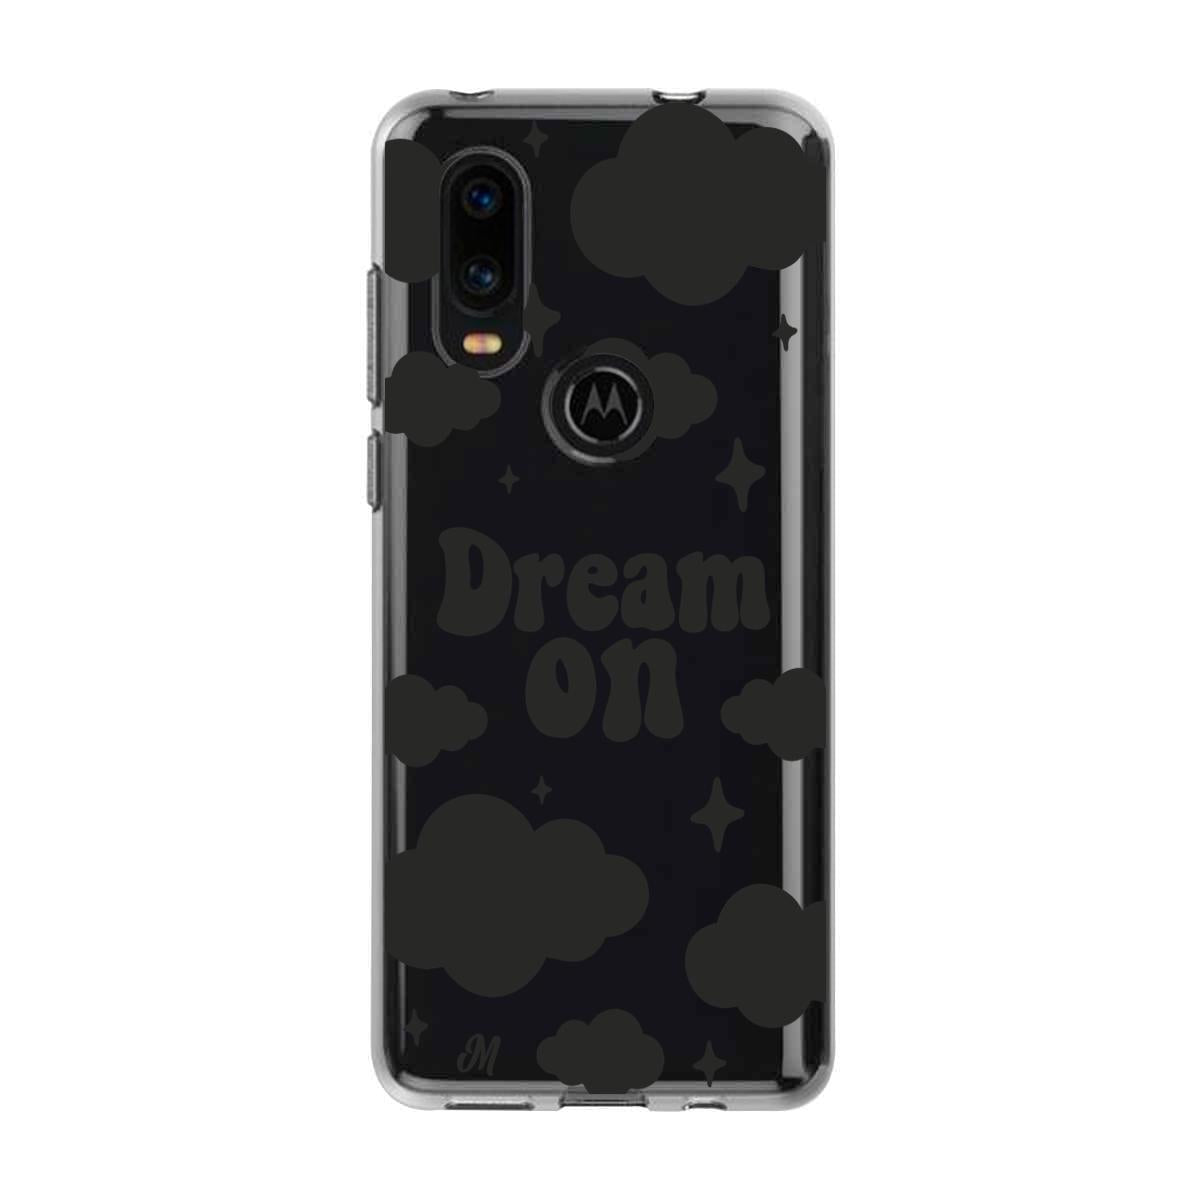 Case para Motorola P40 Dream on negro - Mandala Cases